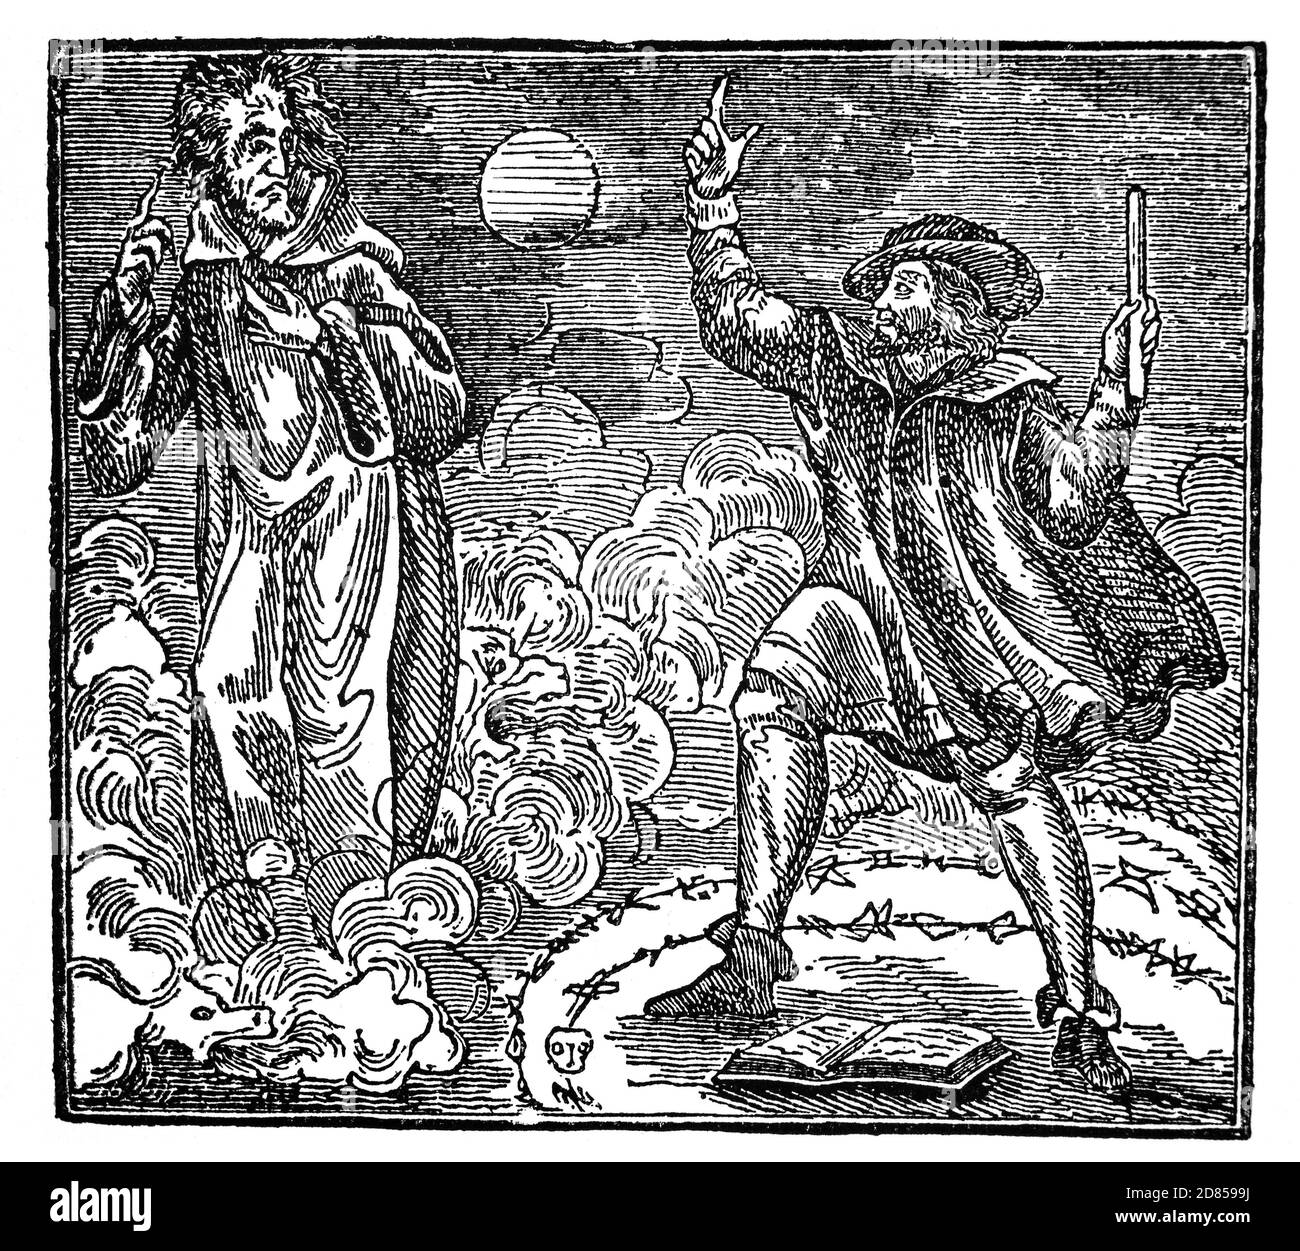 Illustration du XIXe siècle de Faust, alias Doctor Faustus, un nécromancer ou astrologue allemand et héros de l'une des légendes les plus durables du folklore et de la littérature occidentales, élevant le diable avant de vendre son âme en échange de la connaissance et de la puissance. Banque D'Images